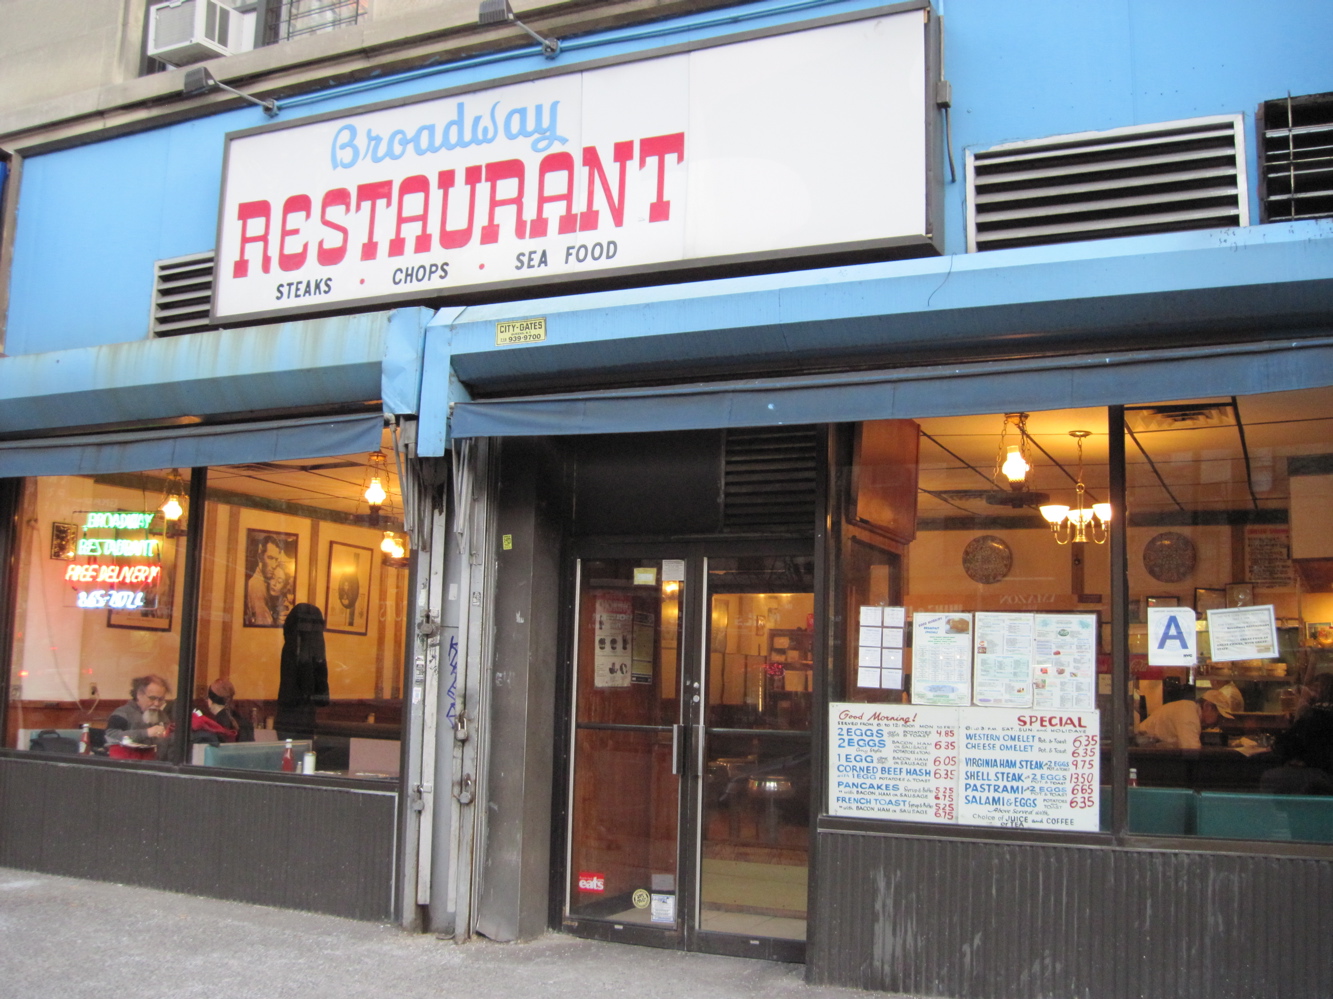 Mitch Broder's Vintage New York: Old New York: The Broadway Restaurant